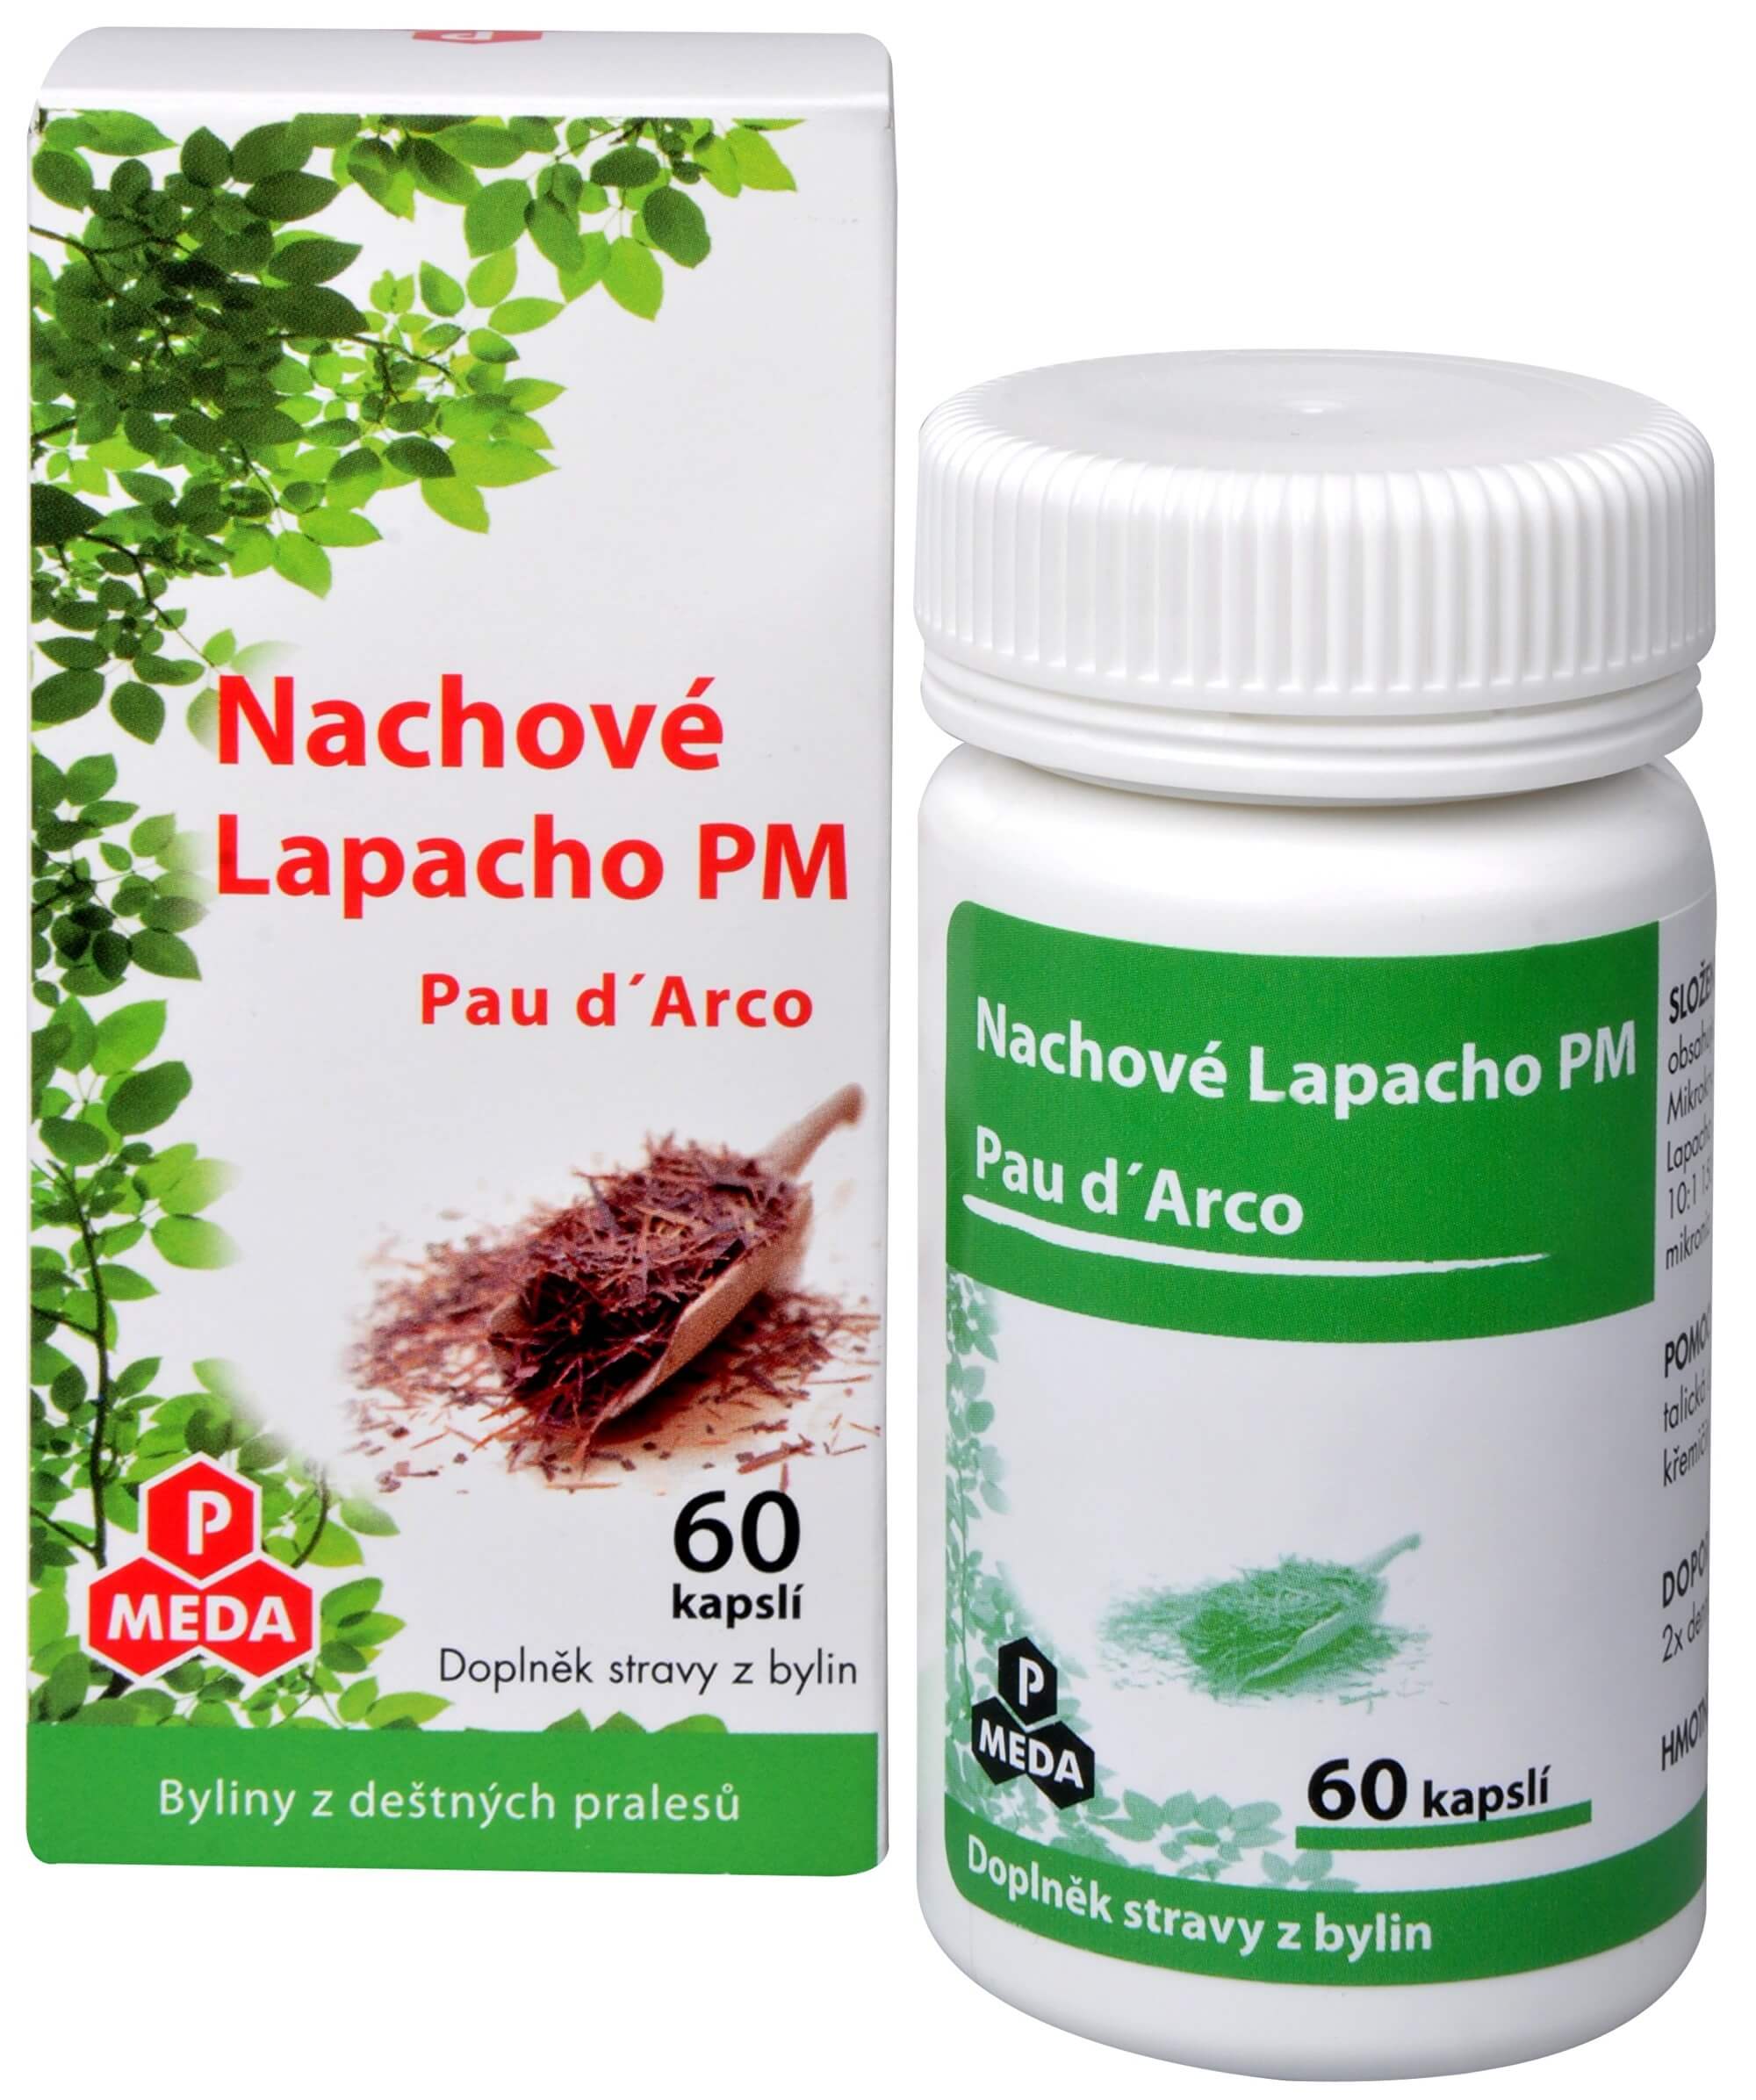 Zobrazit detail výrobku Purus Meda Nachové Lapacho PM (Pau d´Arco) 60 kapslí + 2 měsíce na vrácení zboží